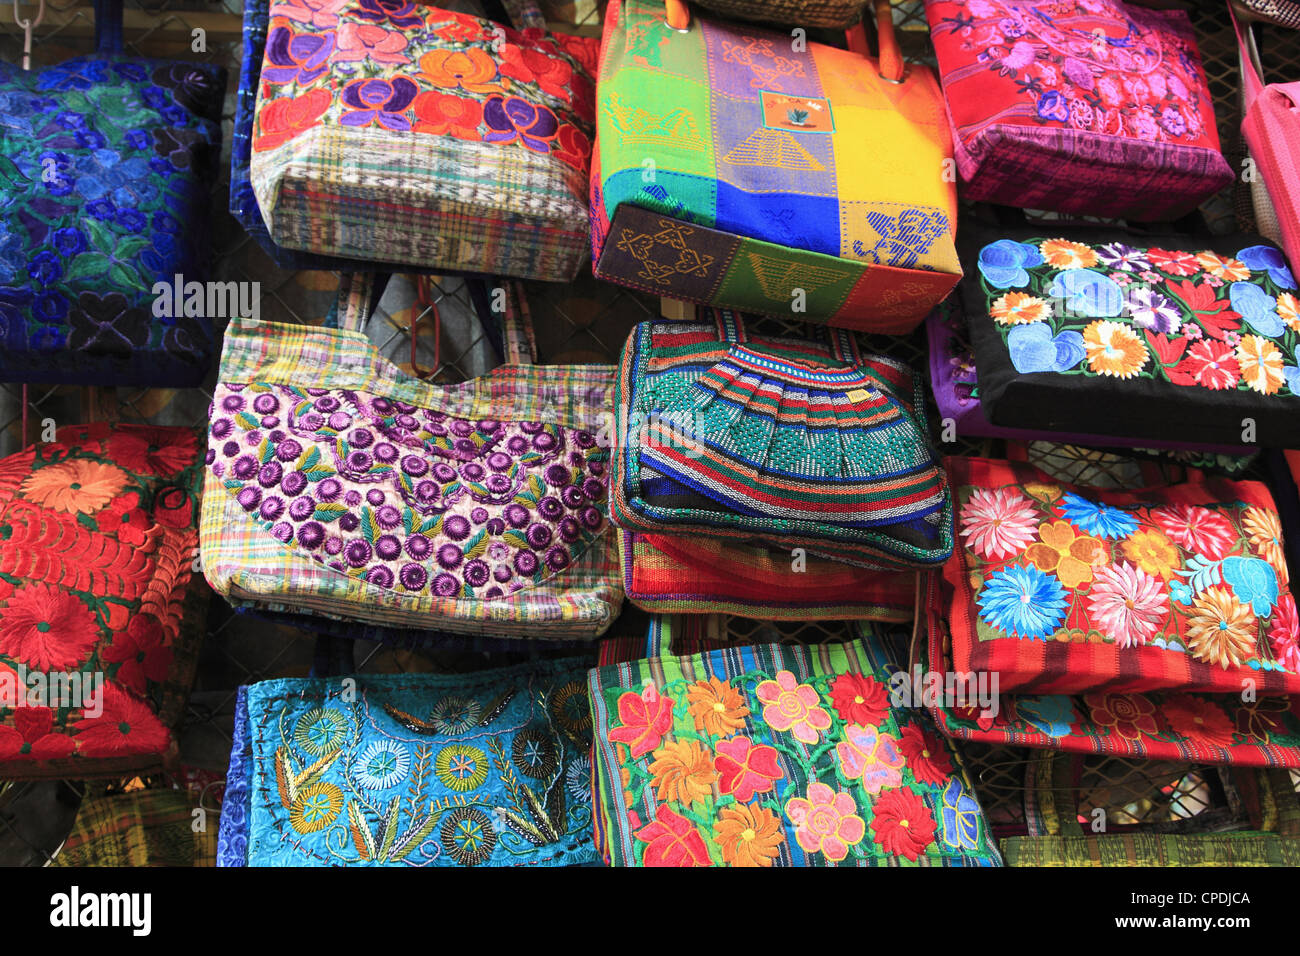 Bolsas artesanales, Mercado de Artesanías, Ciudad de Oaxaca, Oaxaca, México, América del Norte Foto de stock